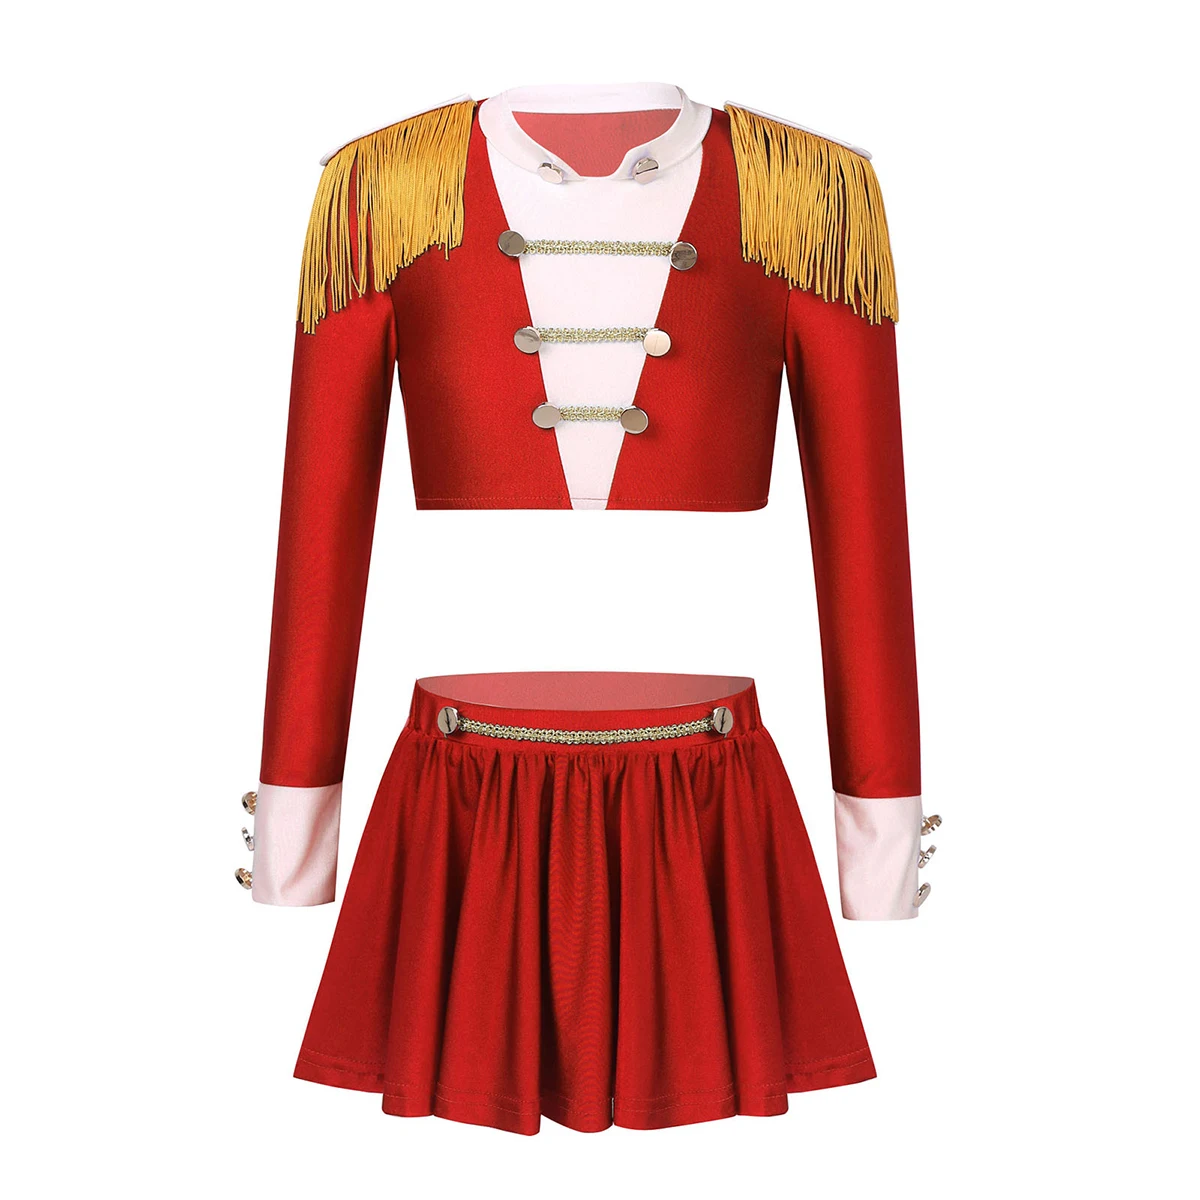 

Kids Girls Jazz Dance Costumes Outfit Cheerleader Uniforms Long Sleeves Crop Top + Skirt Children Dance Clothes Set Latin Dress